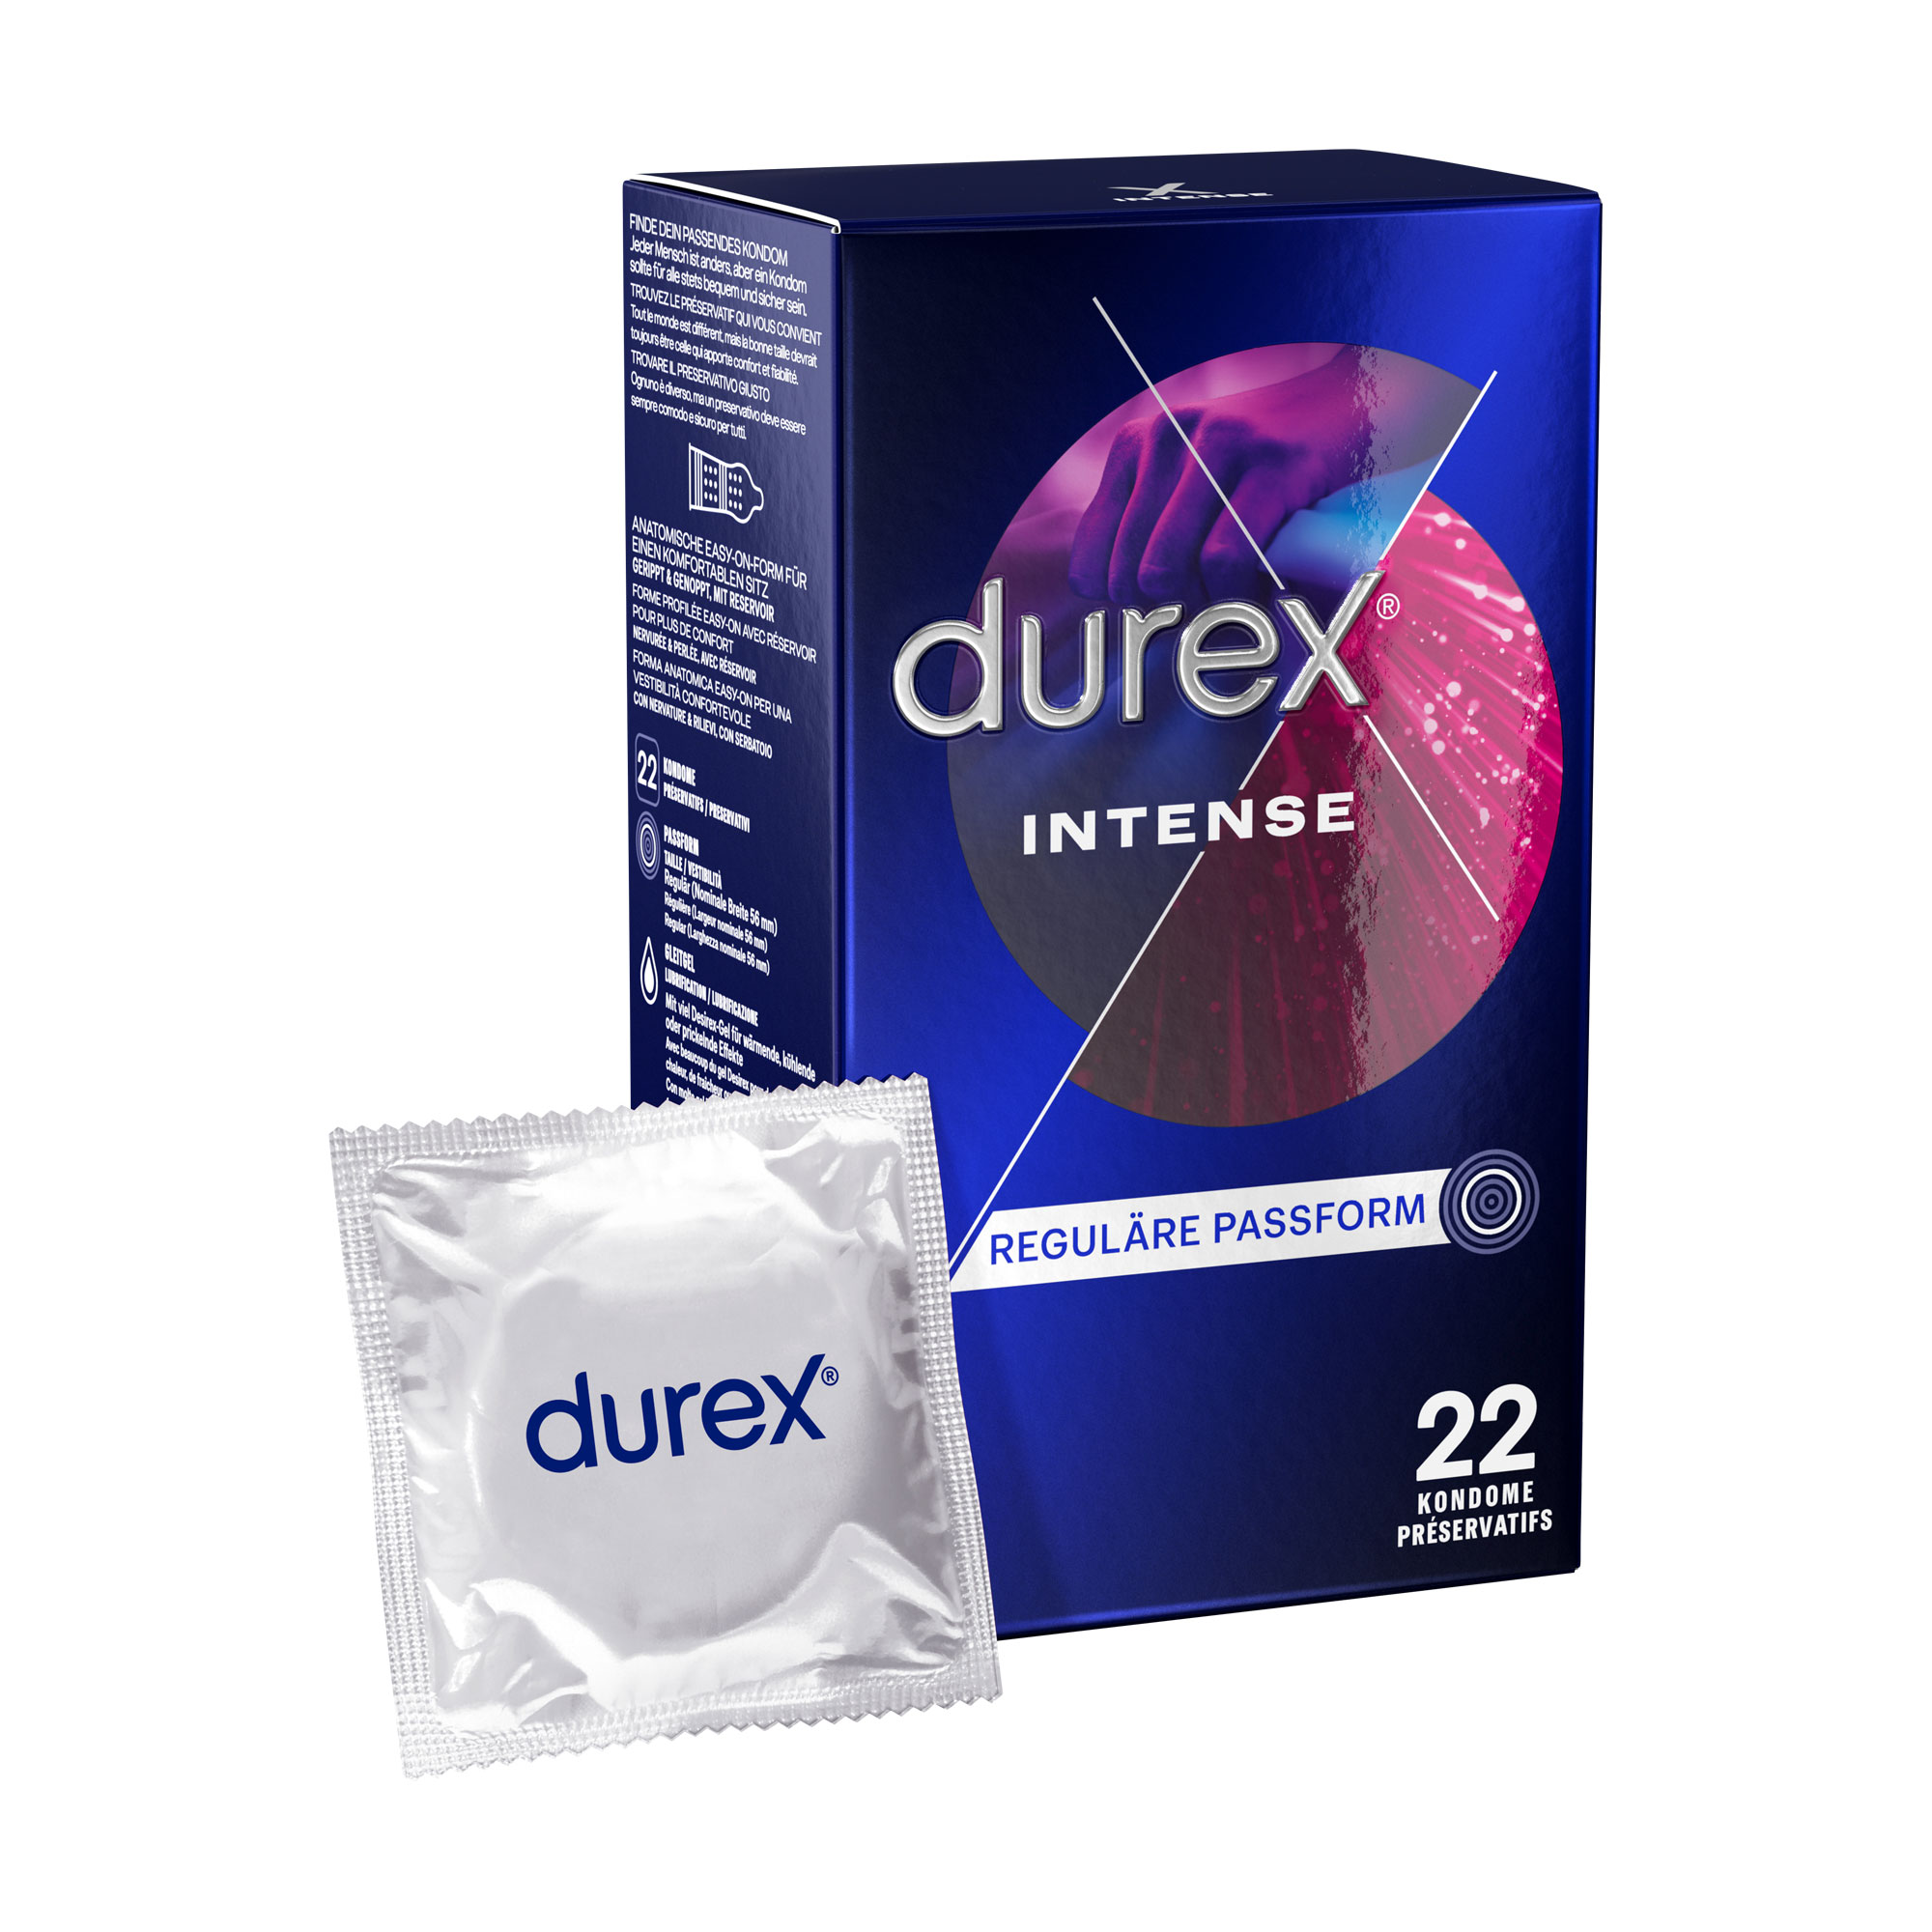 Gerippte und genoppte Kondome. Mit stimulierendem Gel für intensive vaginale Stimulation.